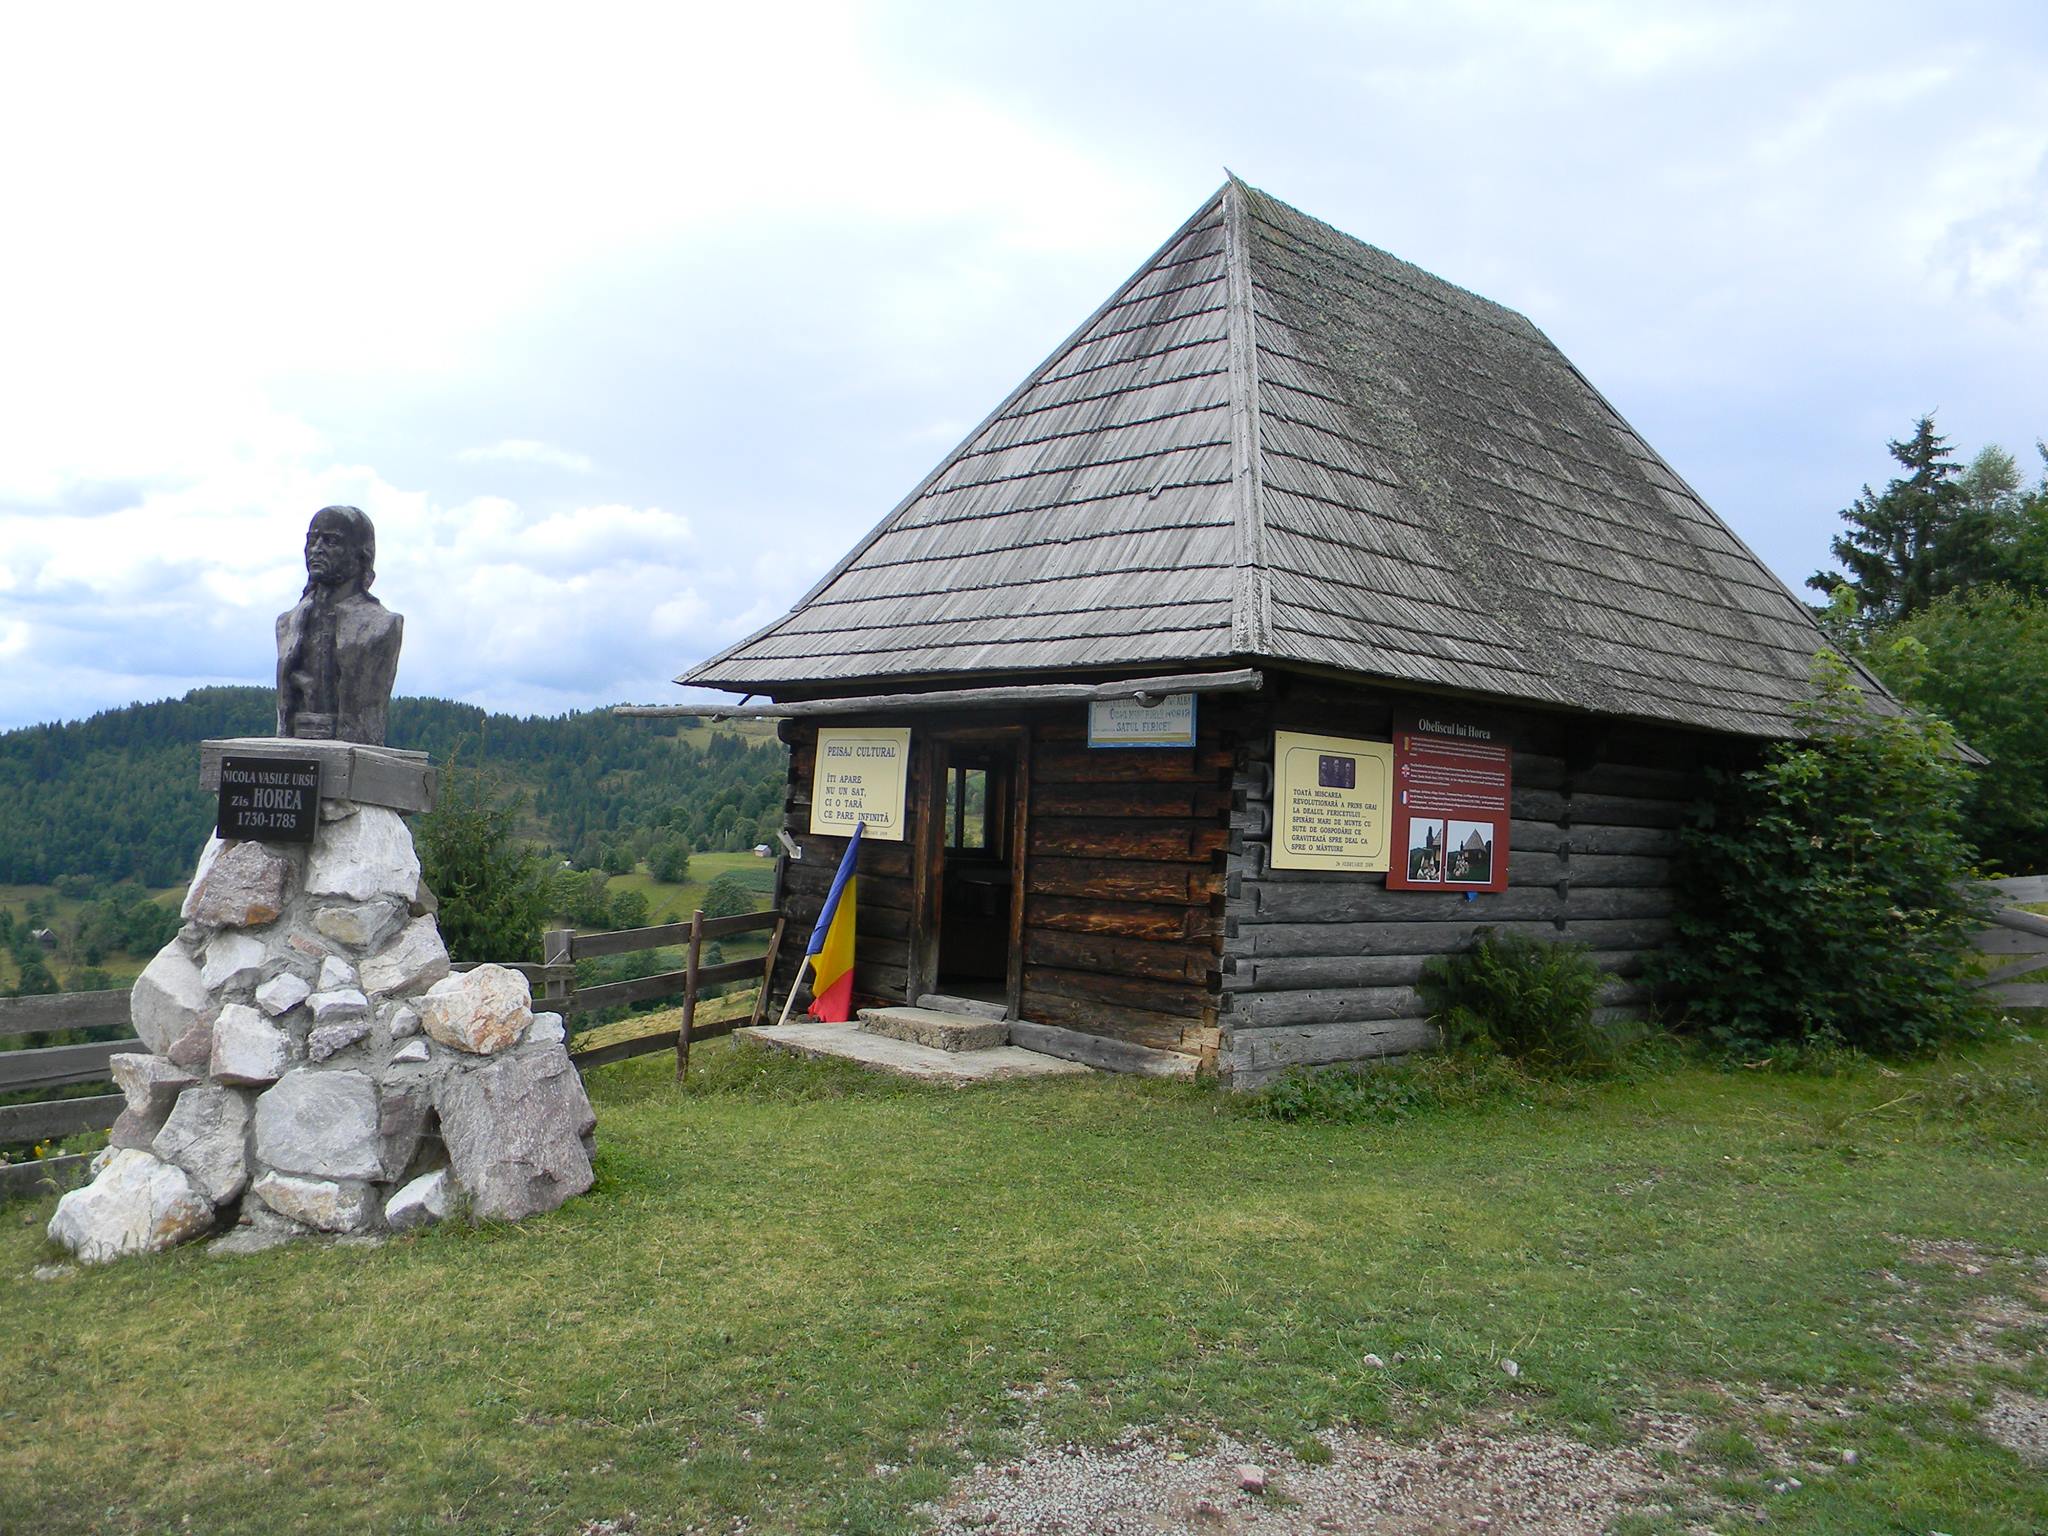  Casa  memoriala  Horea,satul Fericet - Anellise L Florian